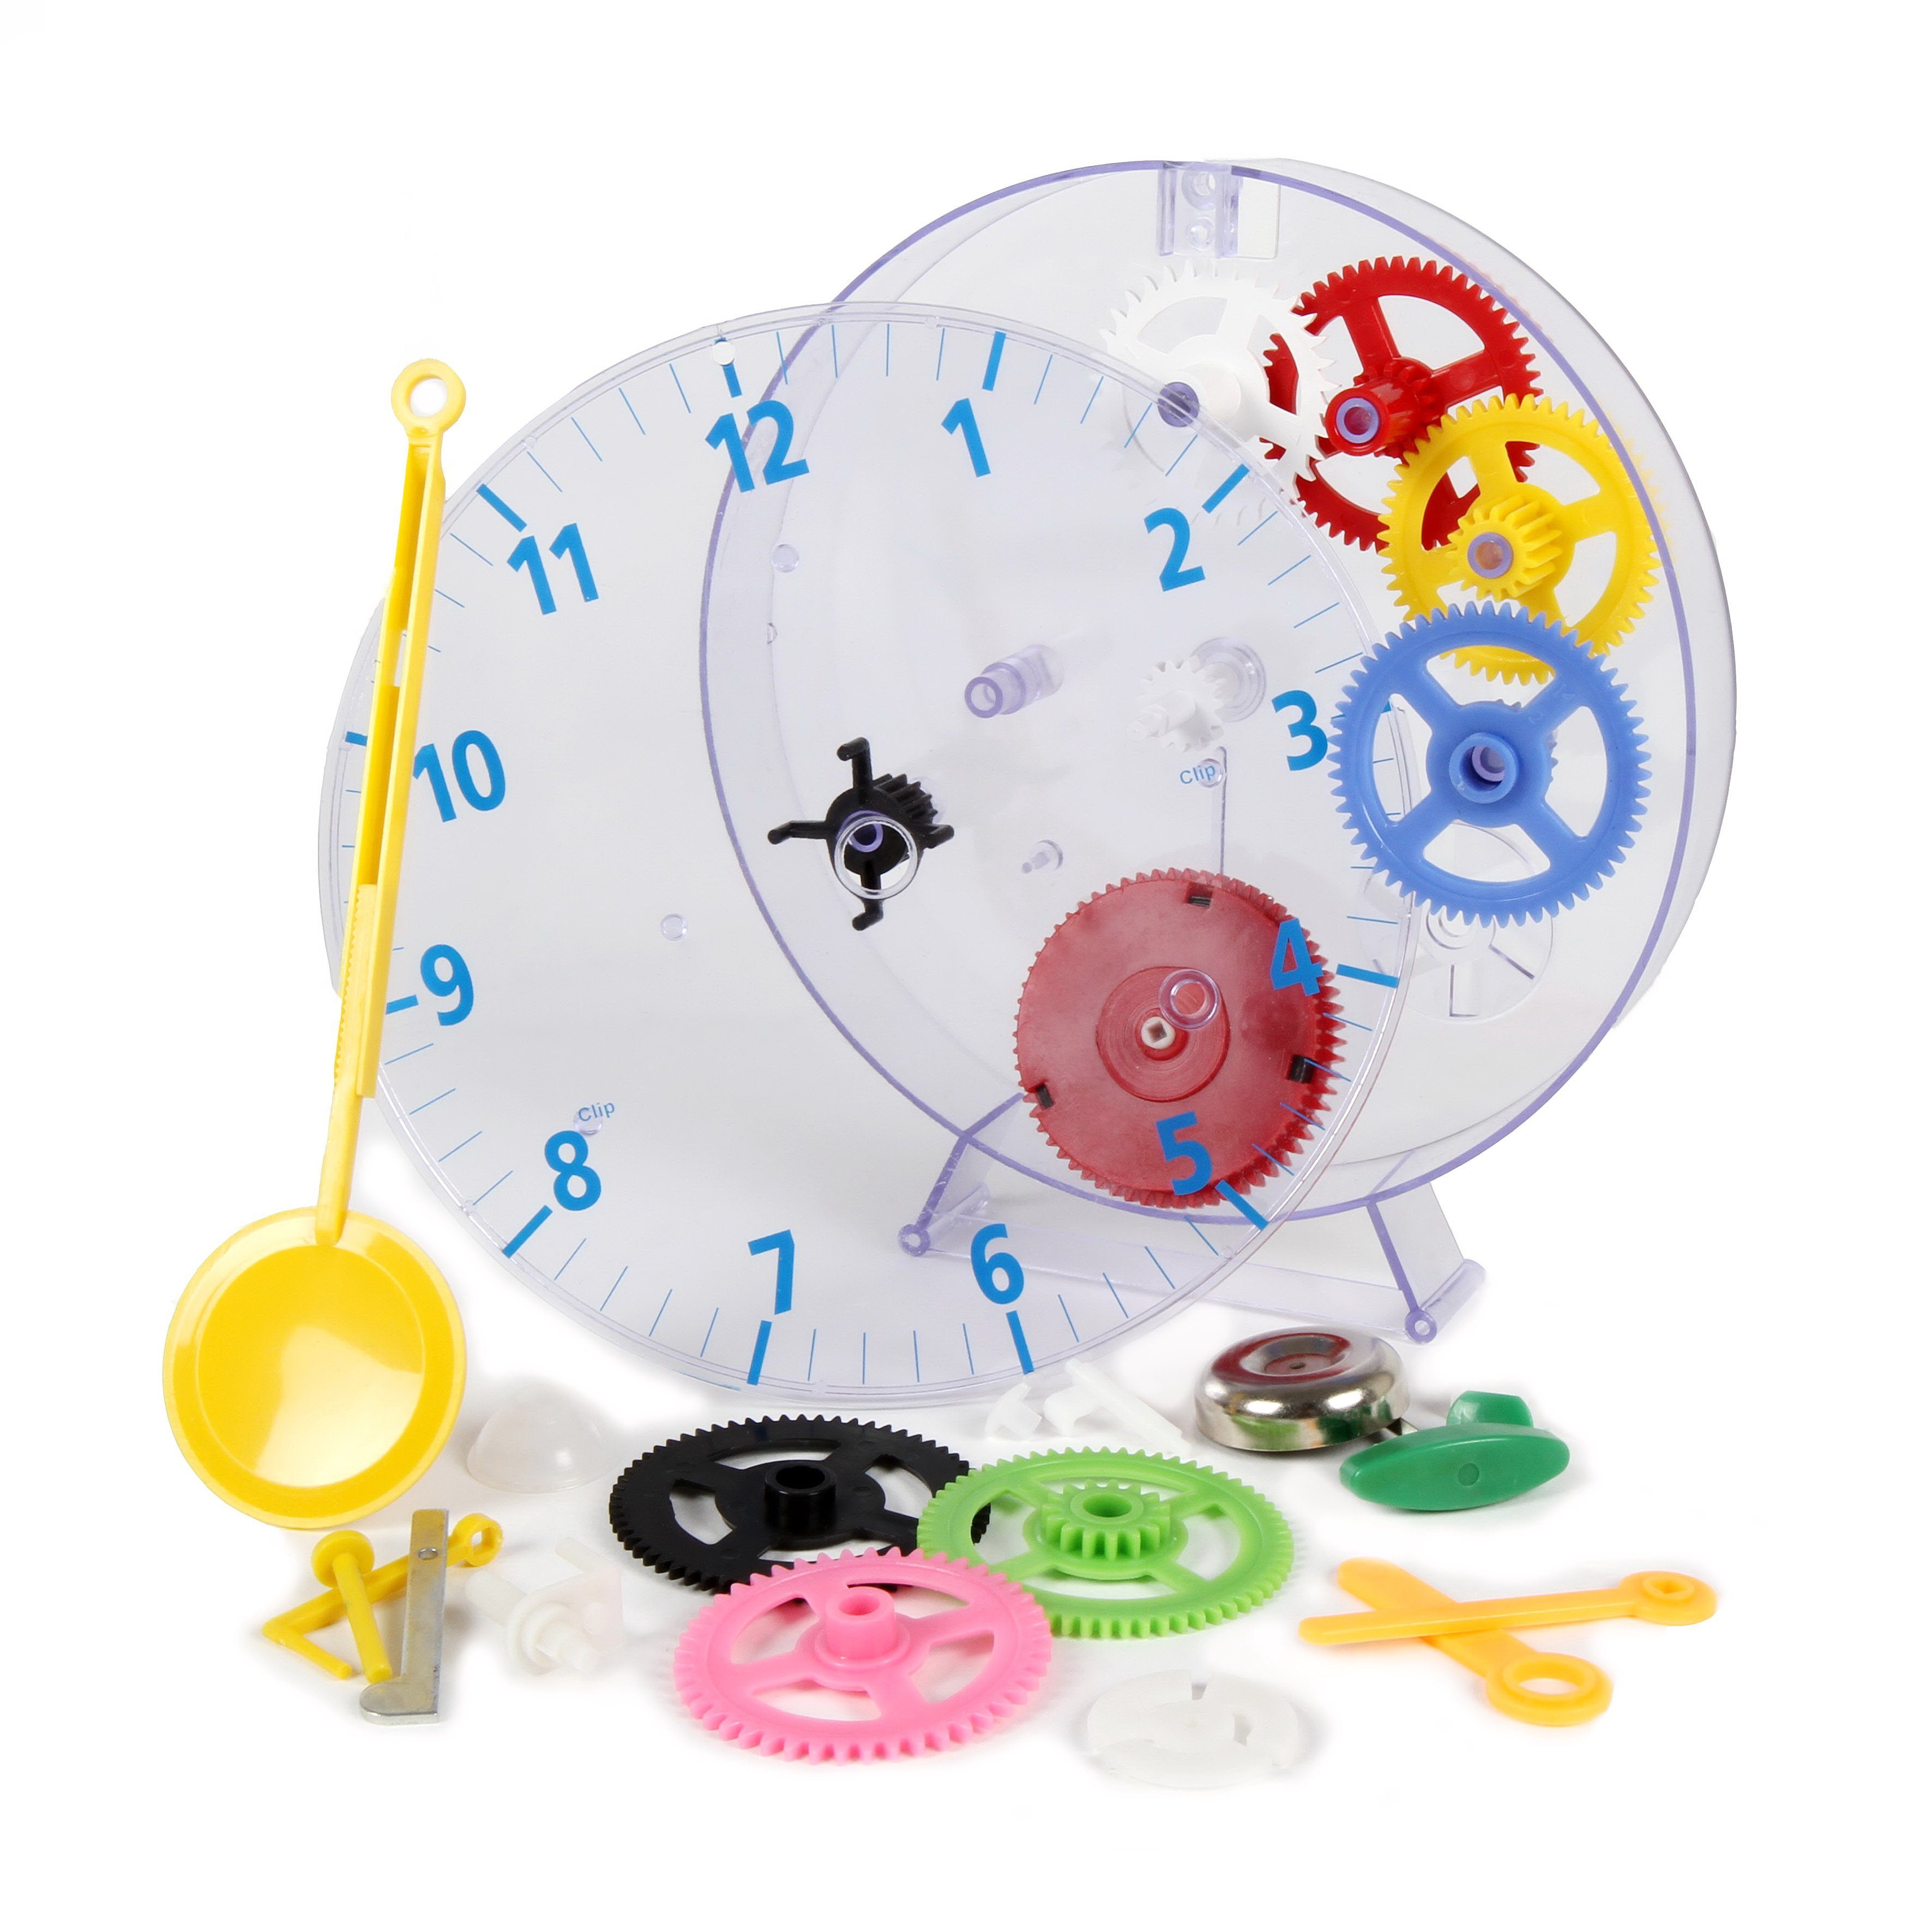 technoline Uhr Modell Kids Clock (faszinierender Pendeluhr-Bausatz für  Kinder), Transparentes Gehäuse: Sehen, wie sich alle Zahnräder drehen